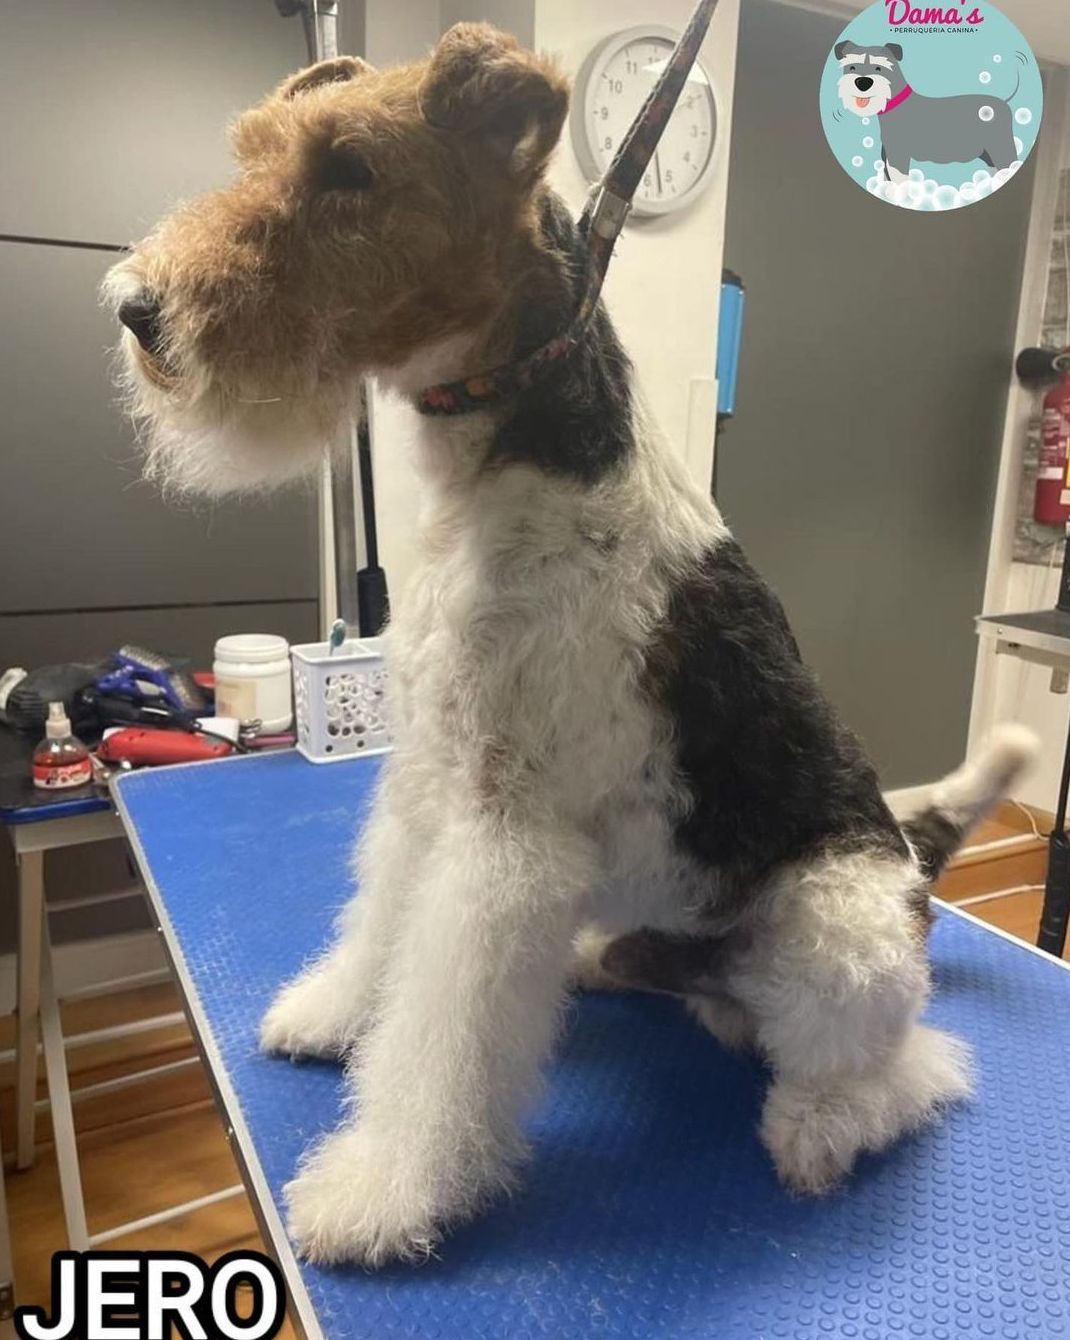 Foto 93 de Peluquería canina con todo tipo de tratamientos para tu mascota en  | Dama's